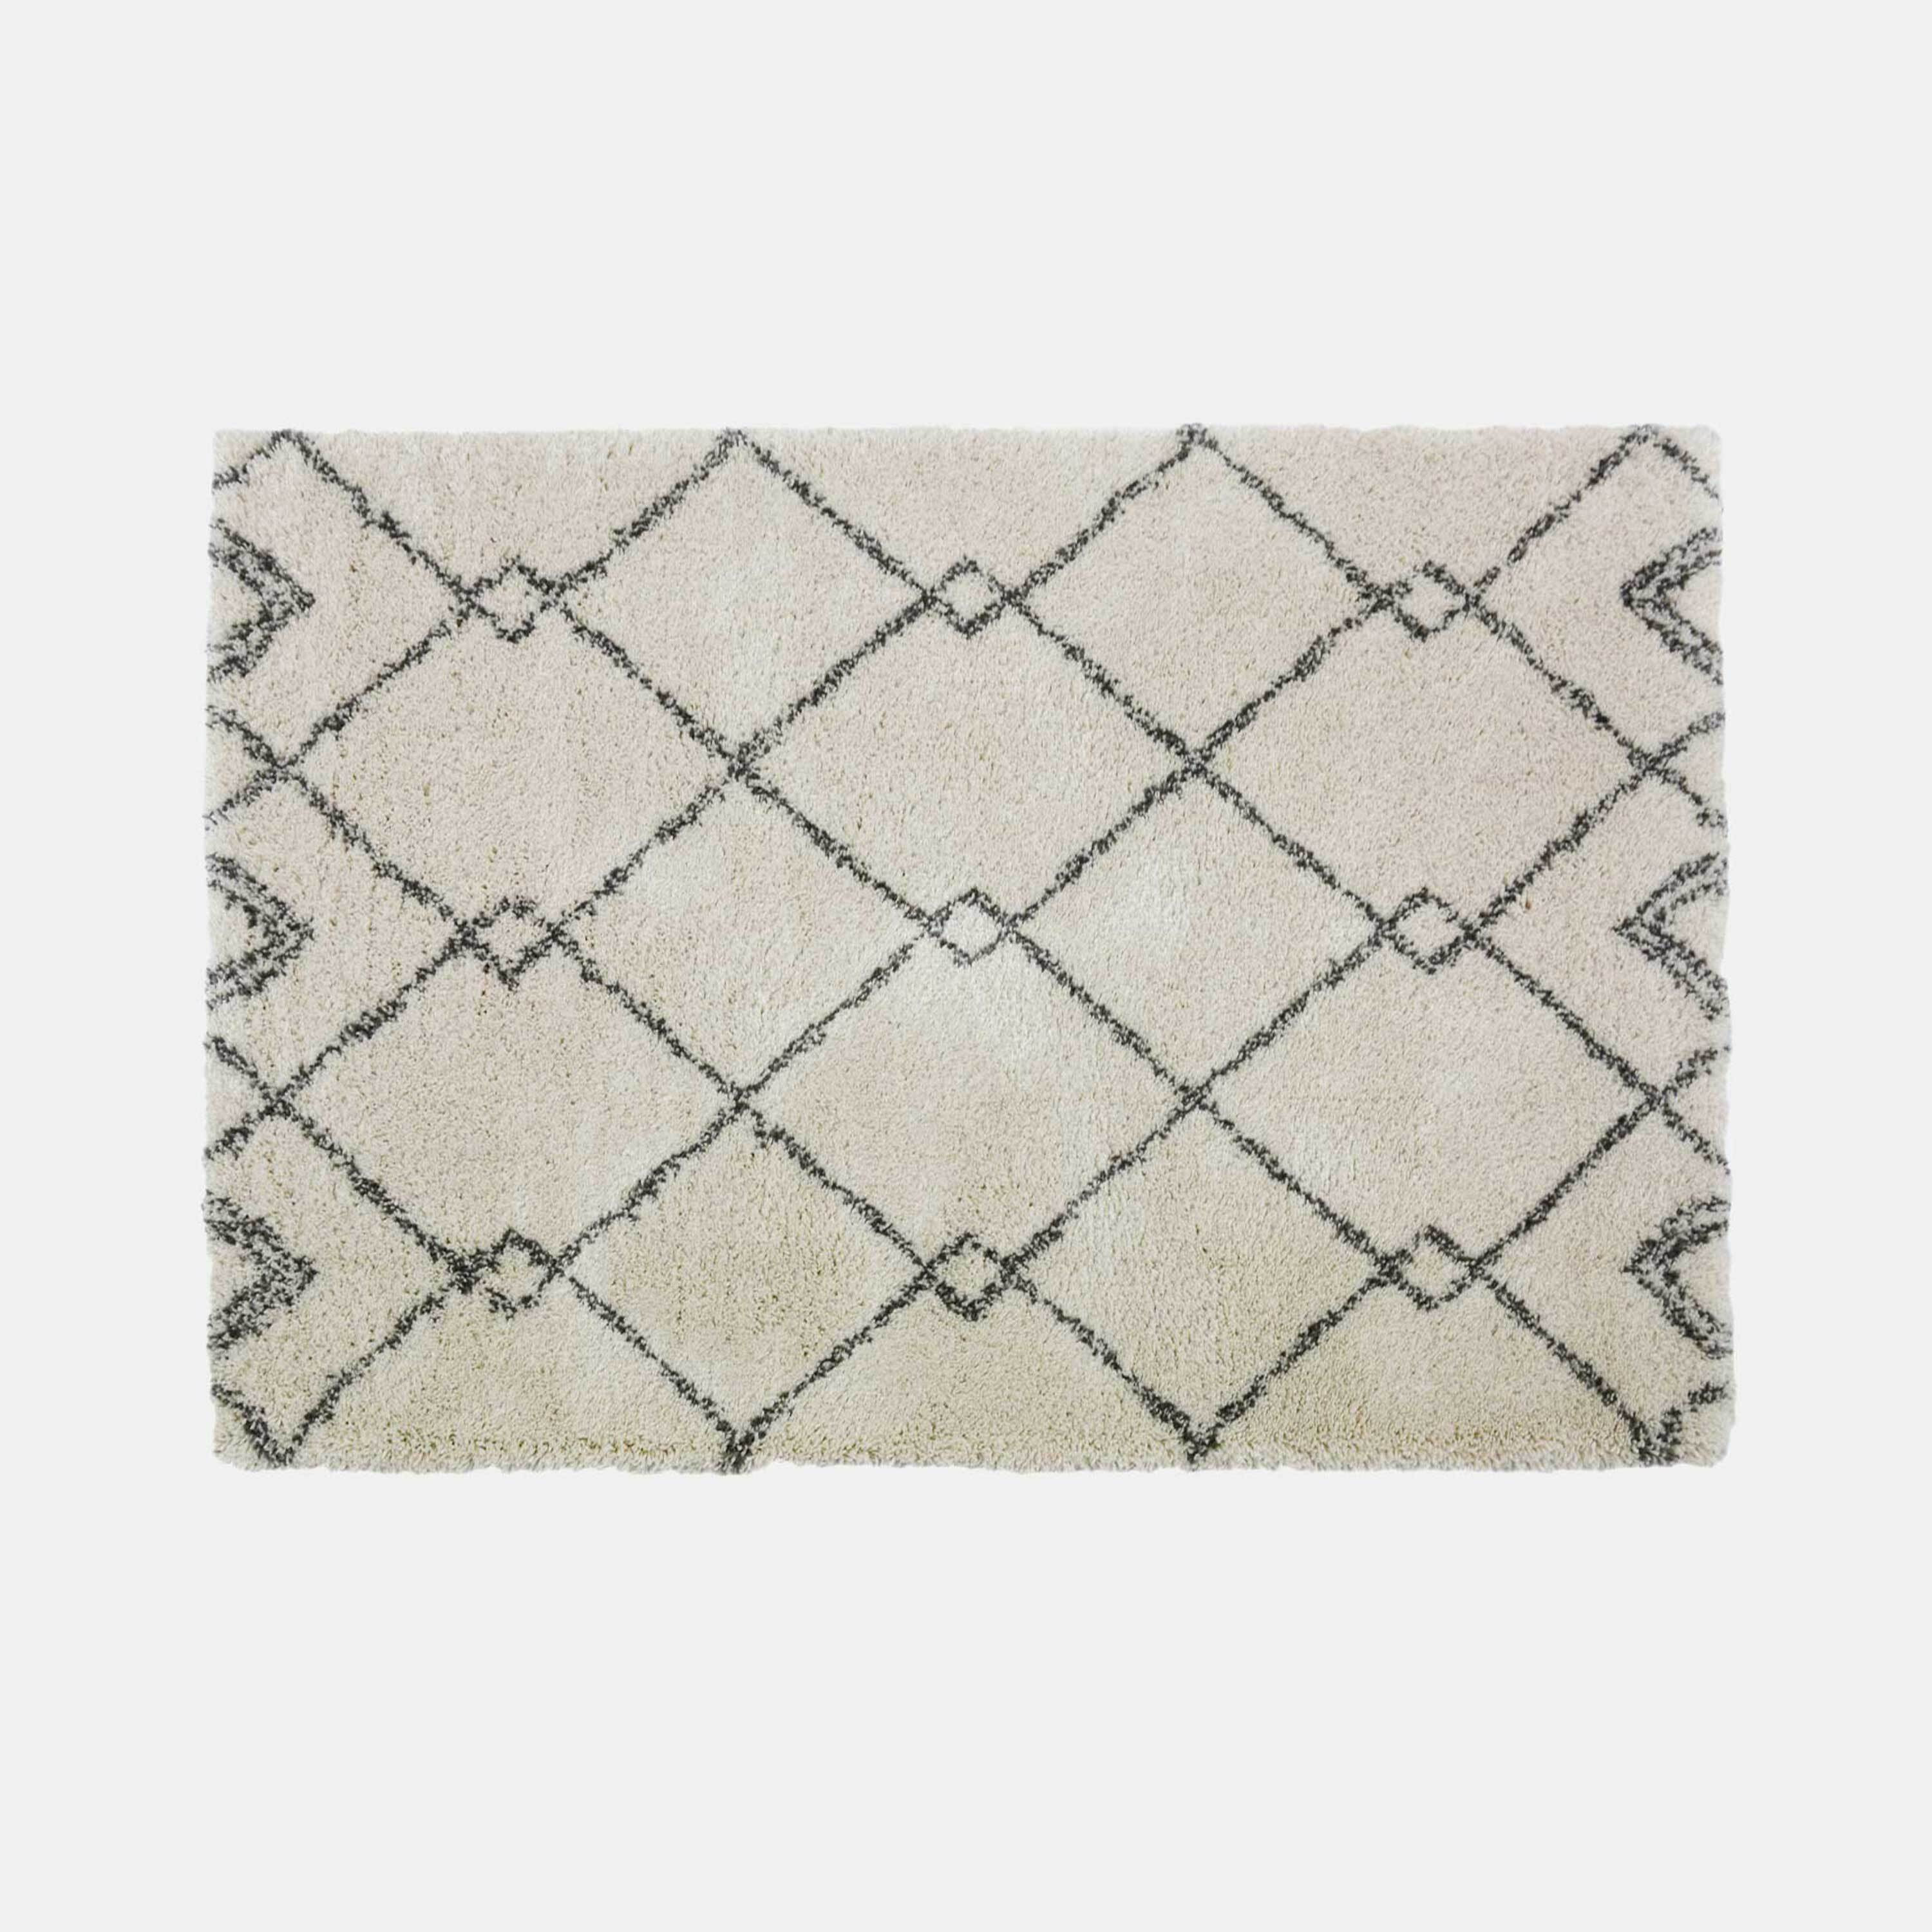 Amira berber style rug, natural and grey - image 1